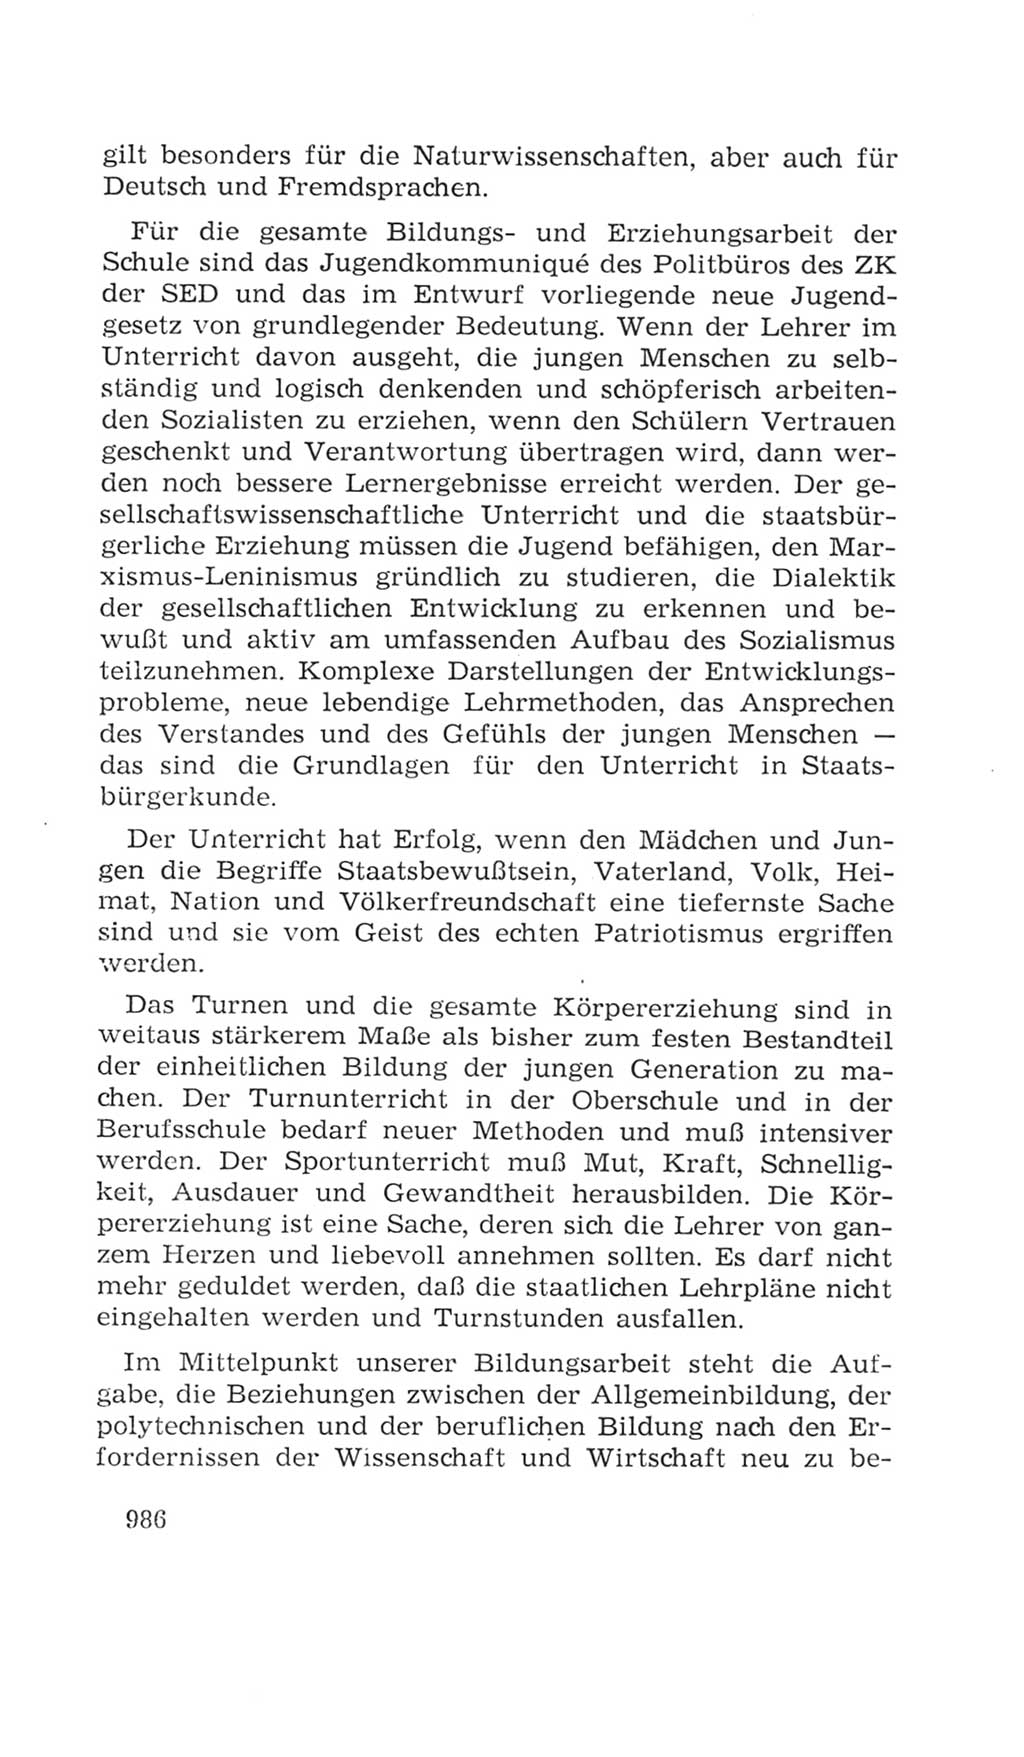 Volkskammer (VK) der Deutschen Demokratischen Republik (DDR), 4. Wahlperiode 1963-1967, Seite 986 (VK. DDR 4. WP. 1963-1967, S. 986)